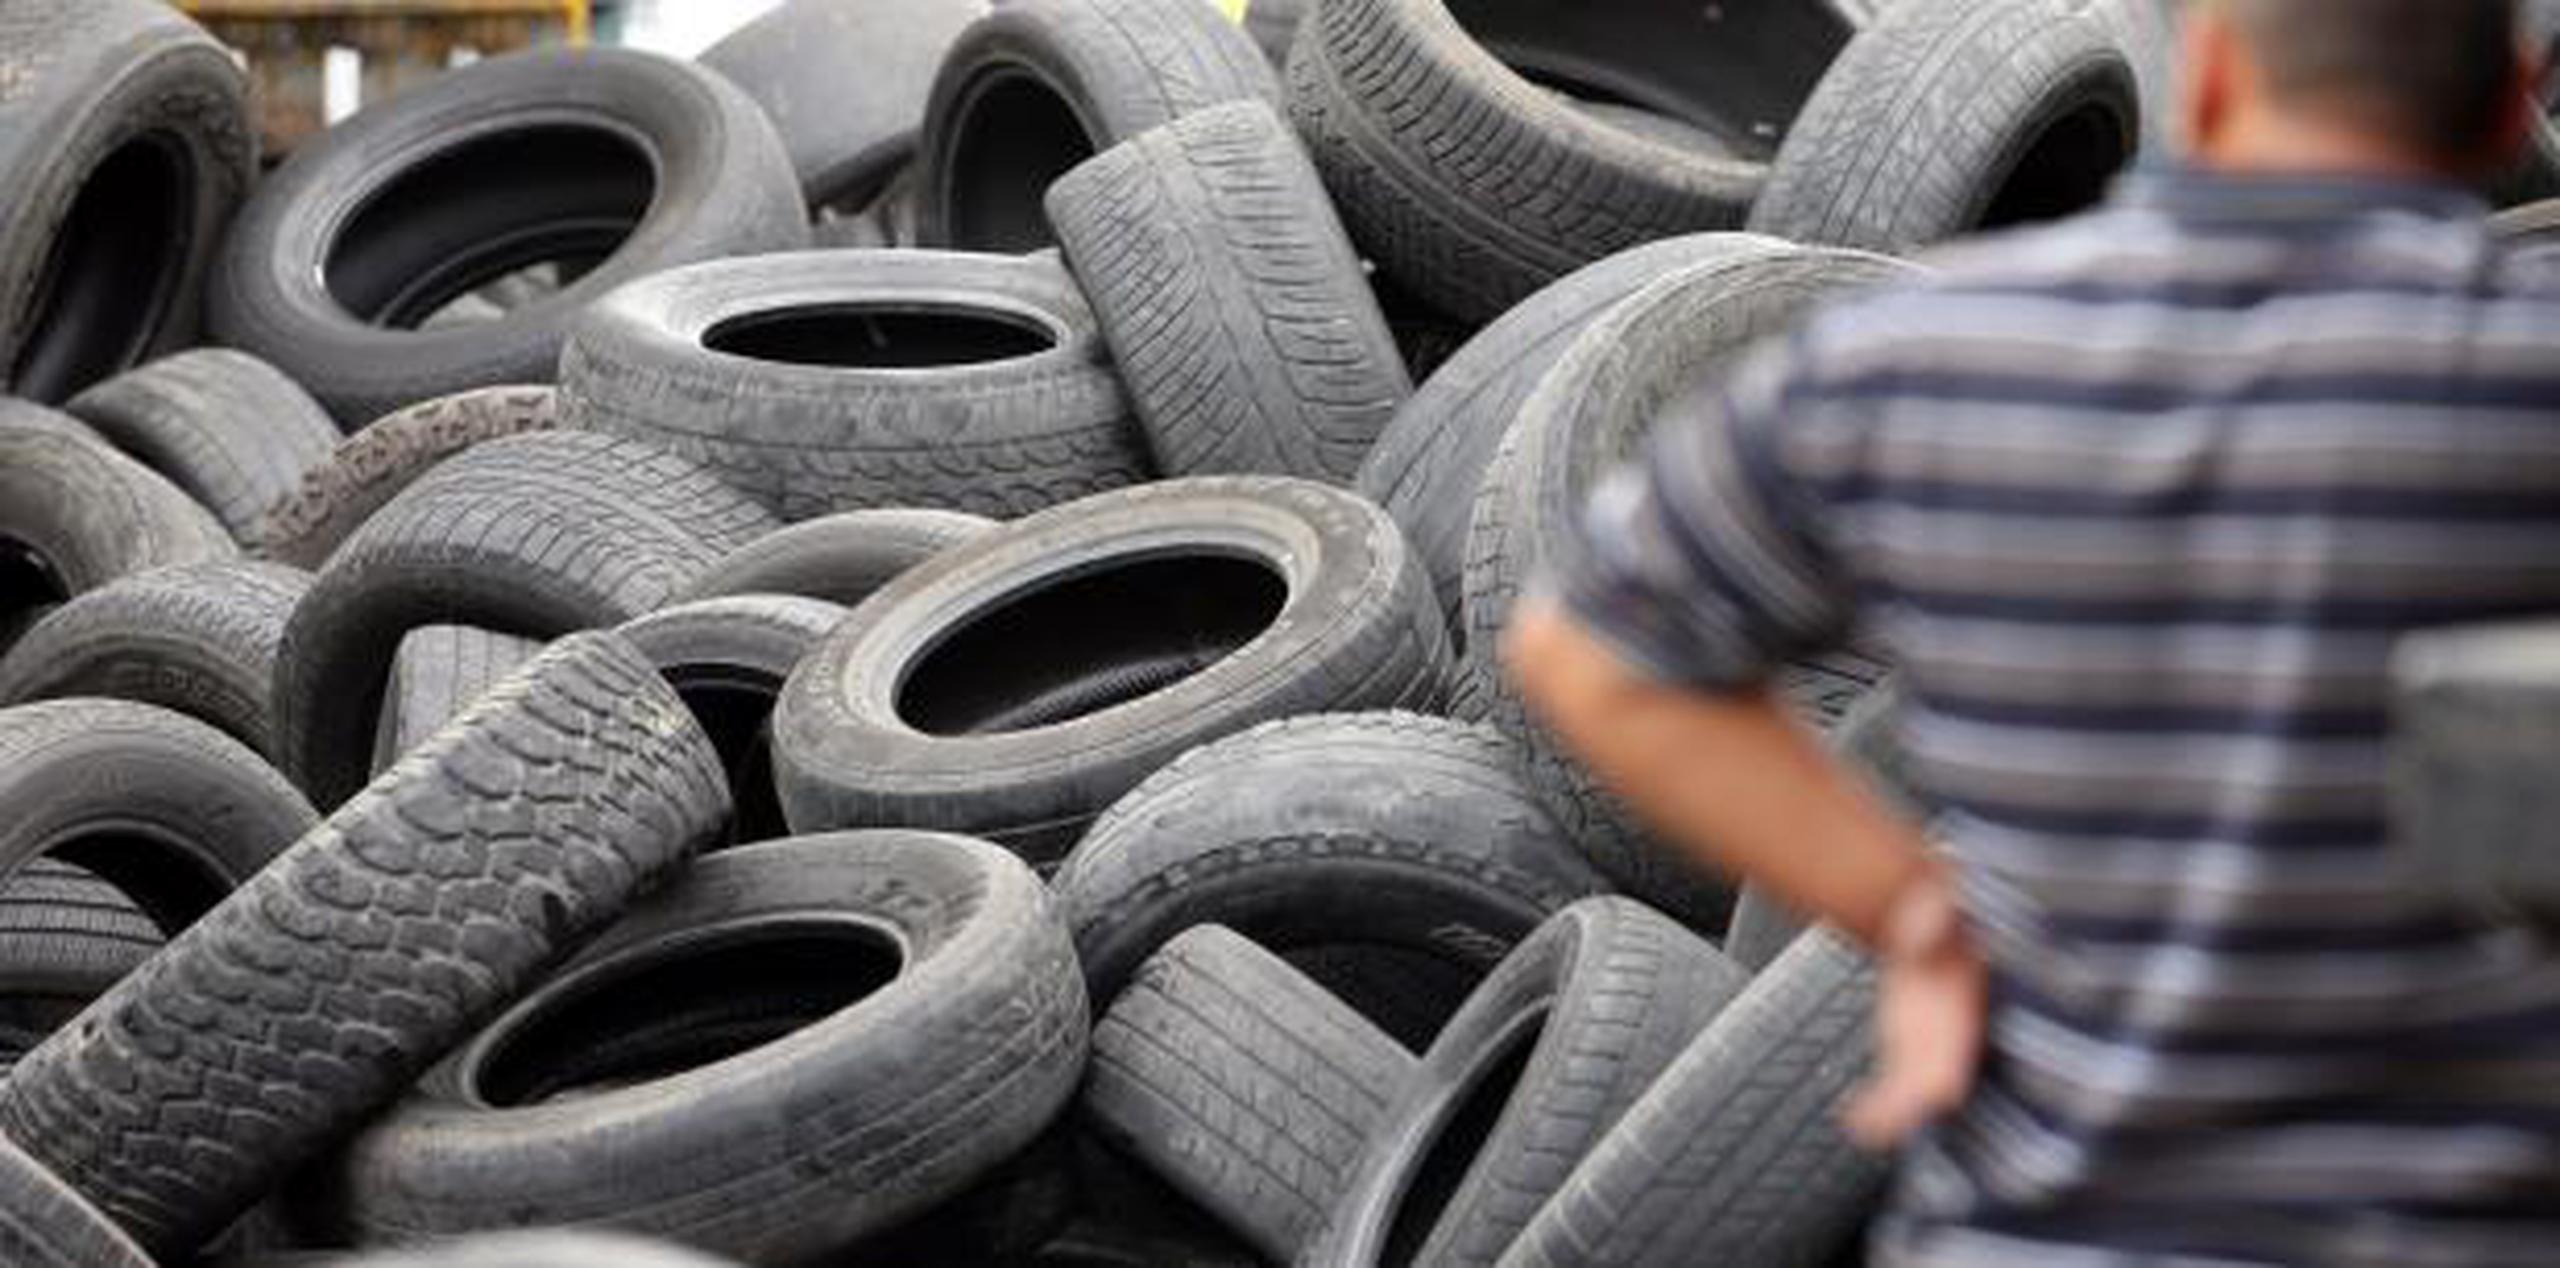 La acumulación desmedida de neumáticos o gomas desechados en gomeras e instalaciones alrededor de Puerto Rico representa una crisis de salud y ambiental.  (Archivo)